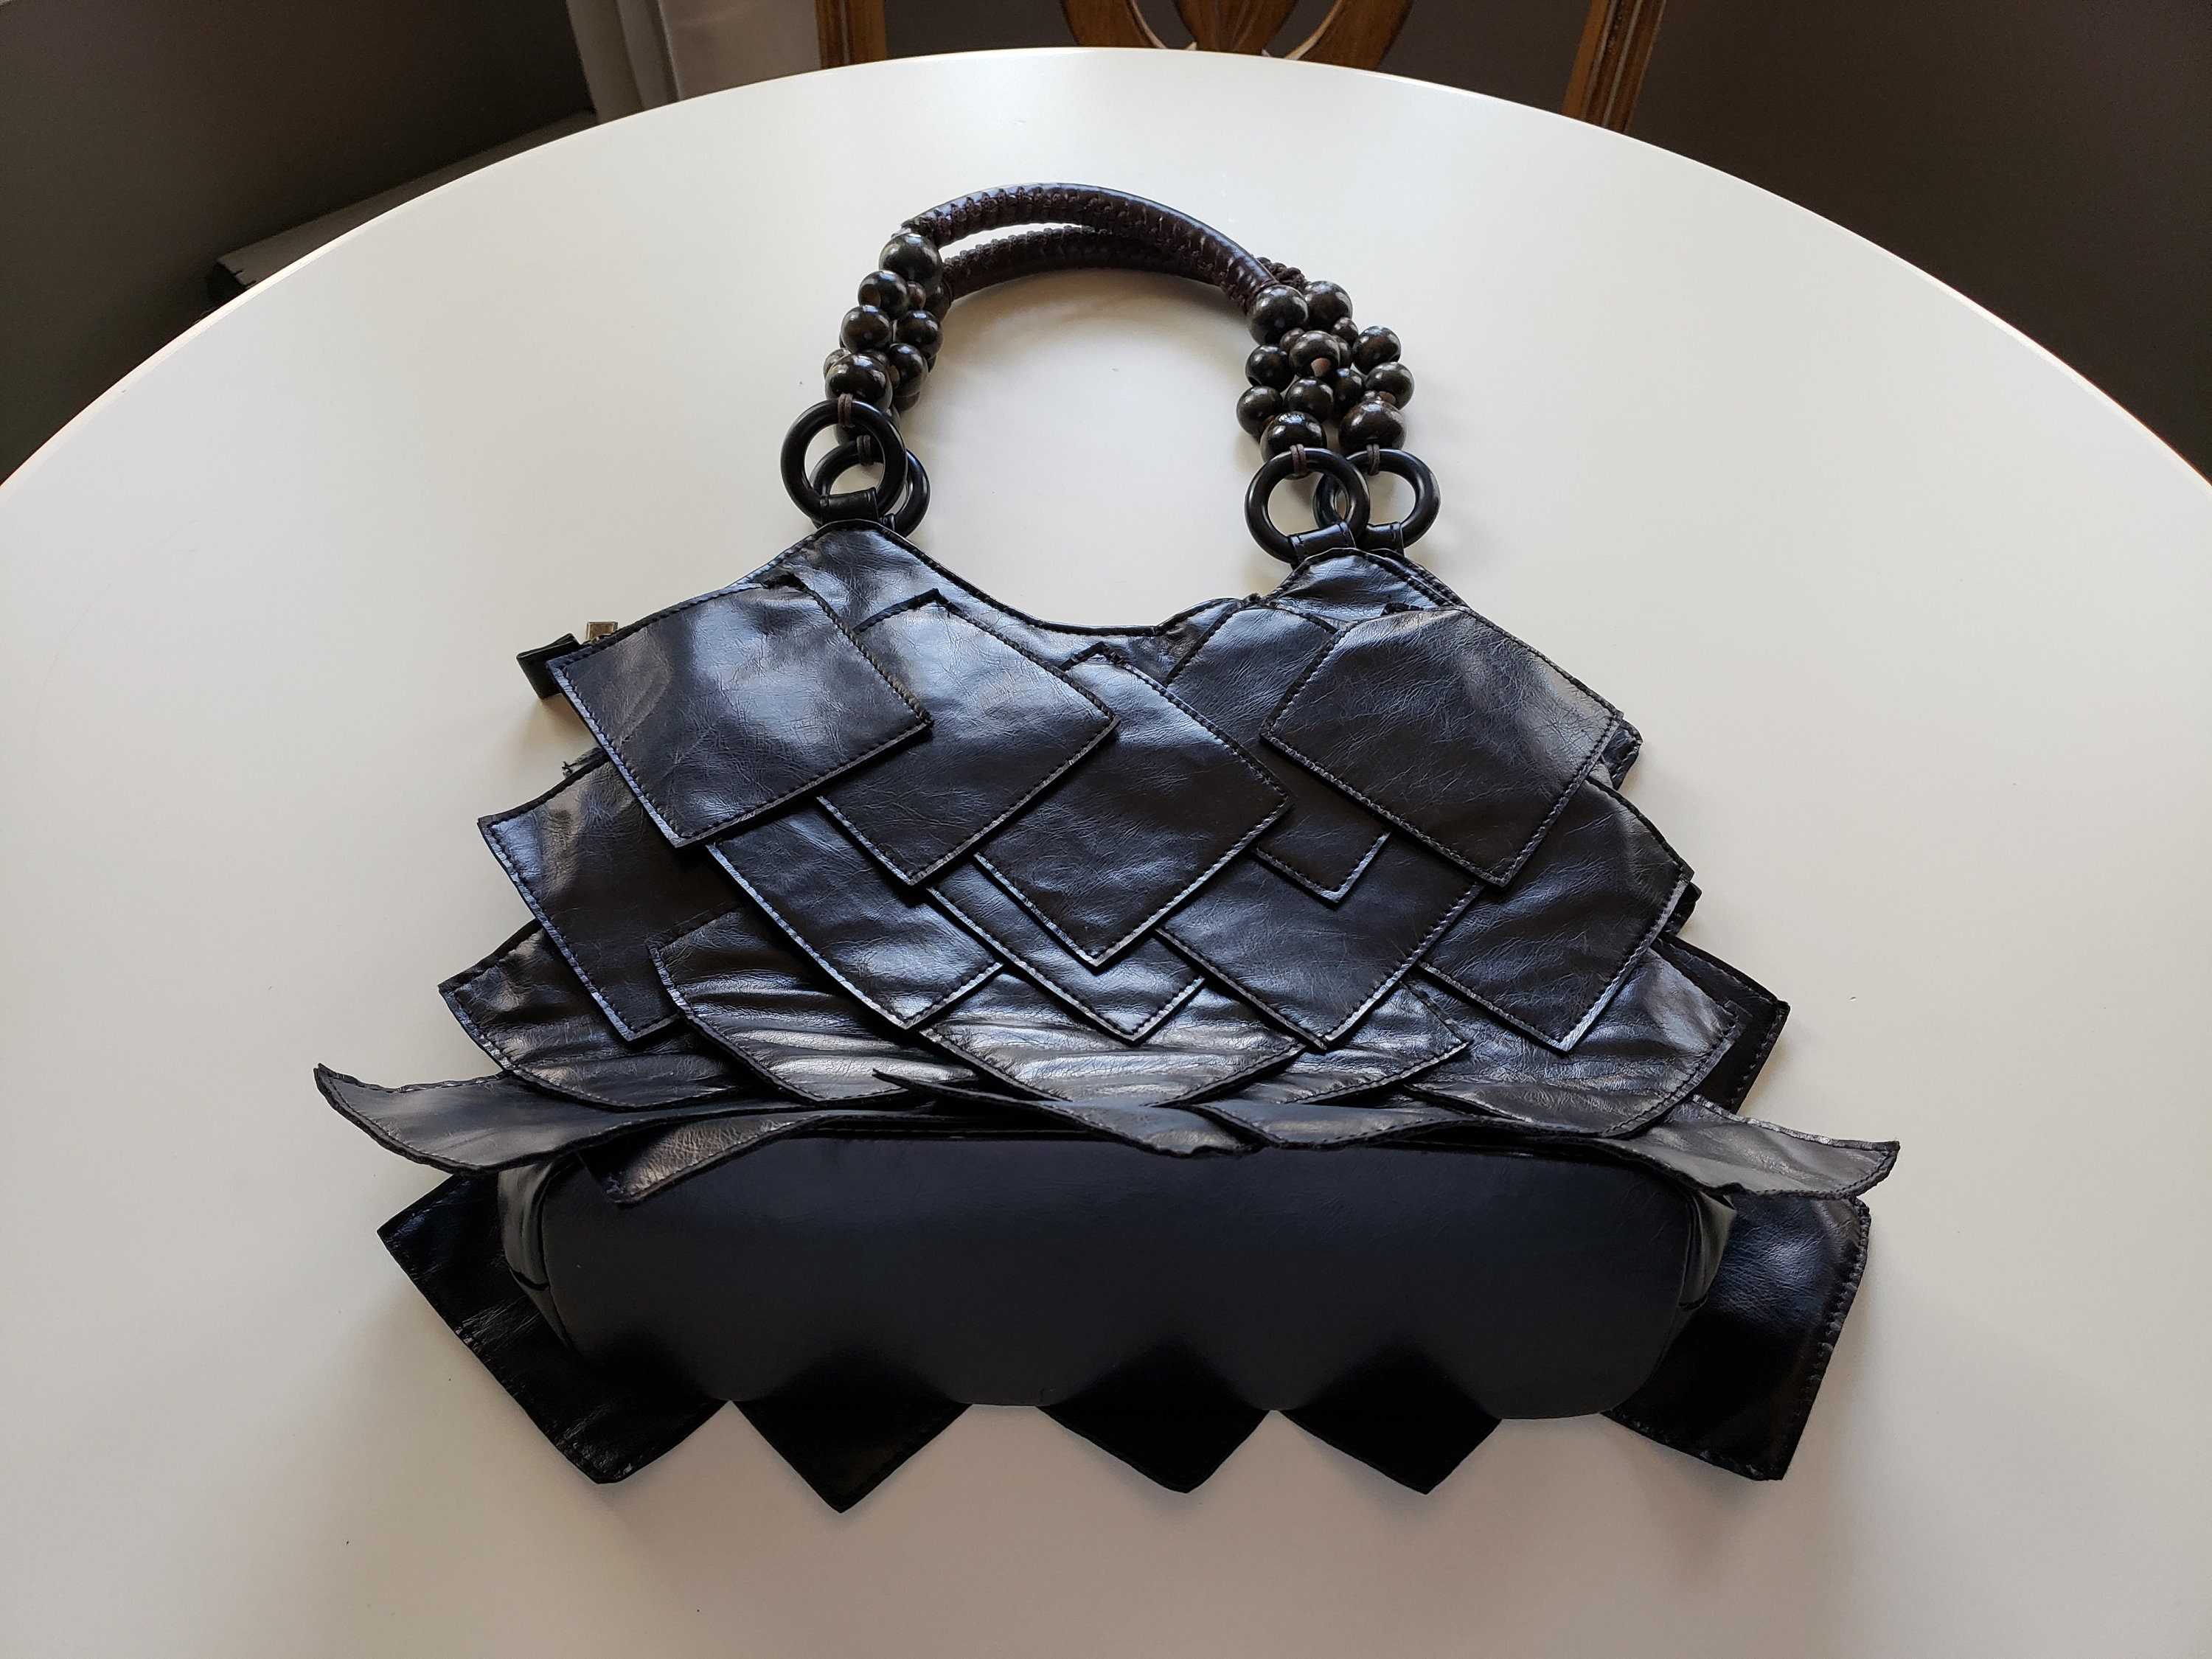 STUDIOCULT Vegan Leather Binder Clip Bag Novelty Purse - Retro